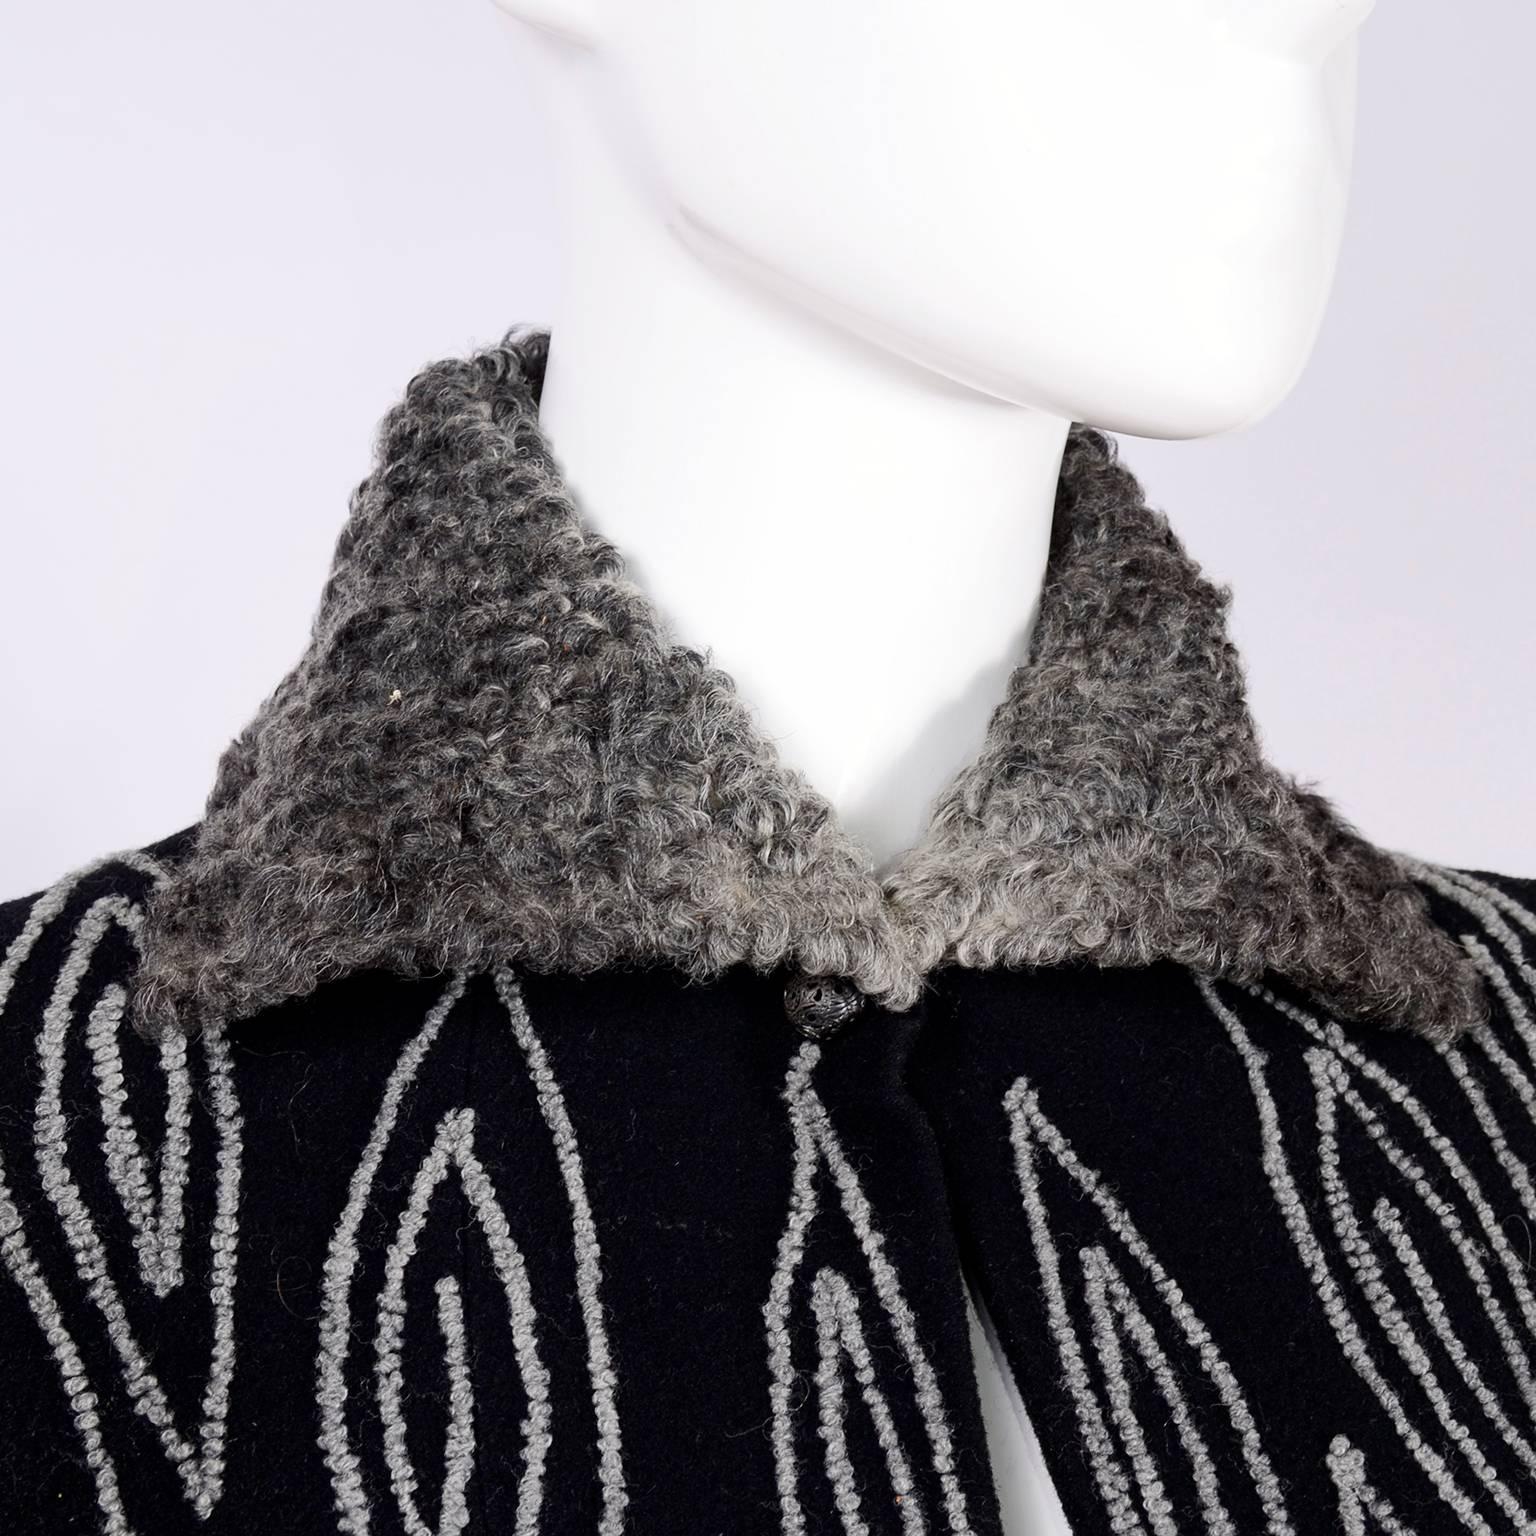 Il s'agit d'une fabuleuse veste vintage art déco portant le Label Exclusive Modes de Marshall Field & Company datant de la fin des années 1920 ou du début des années 1930.  La veste est en laine noire feutrée, avec un col et des poignets en laine